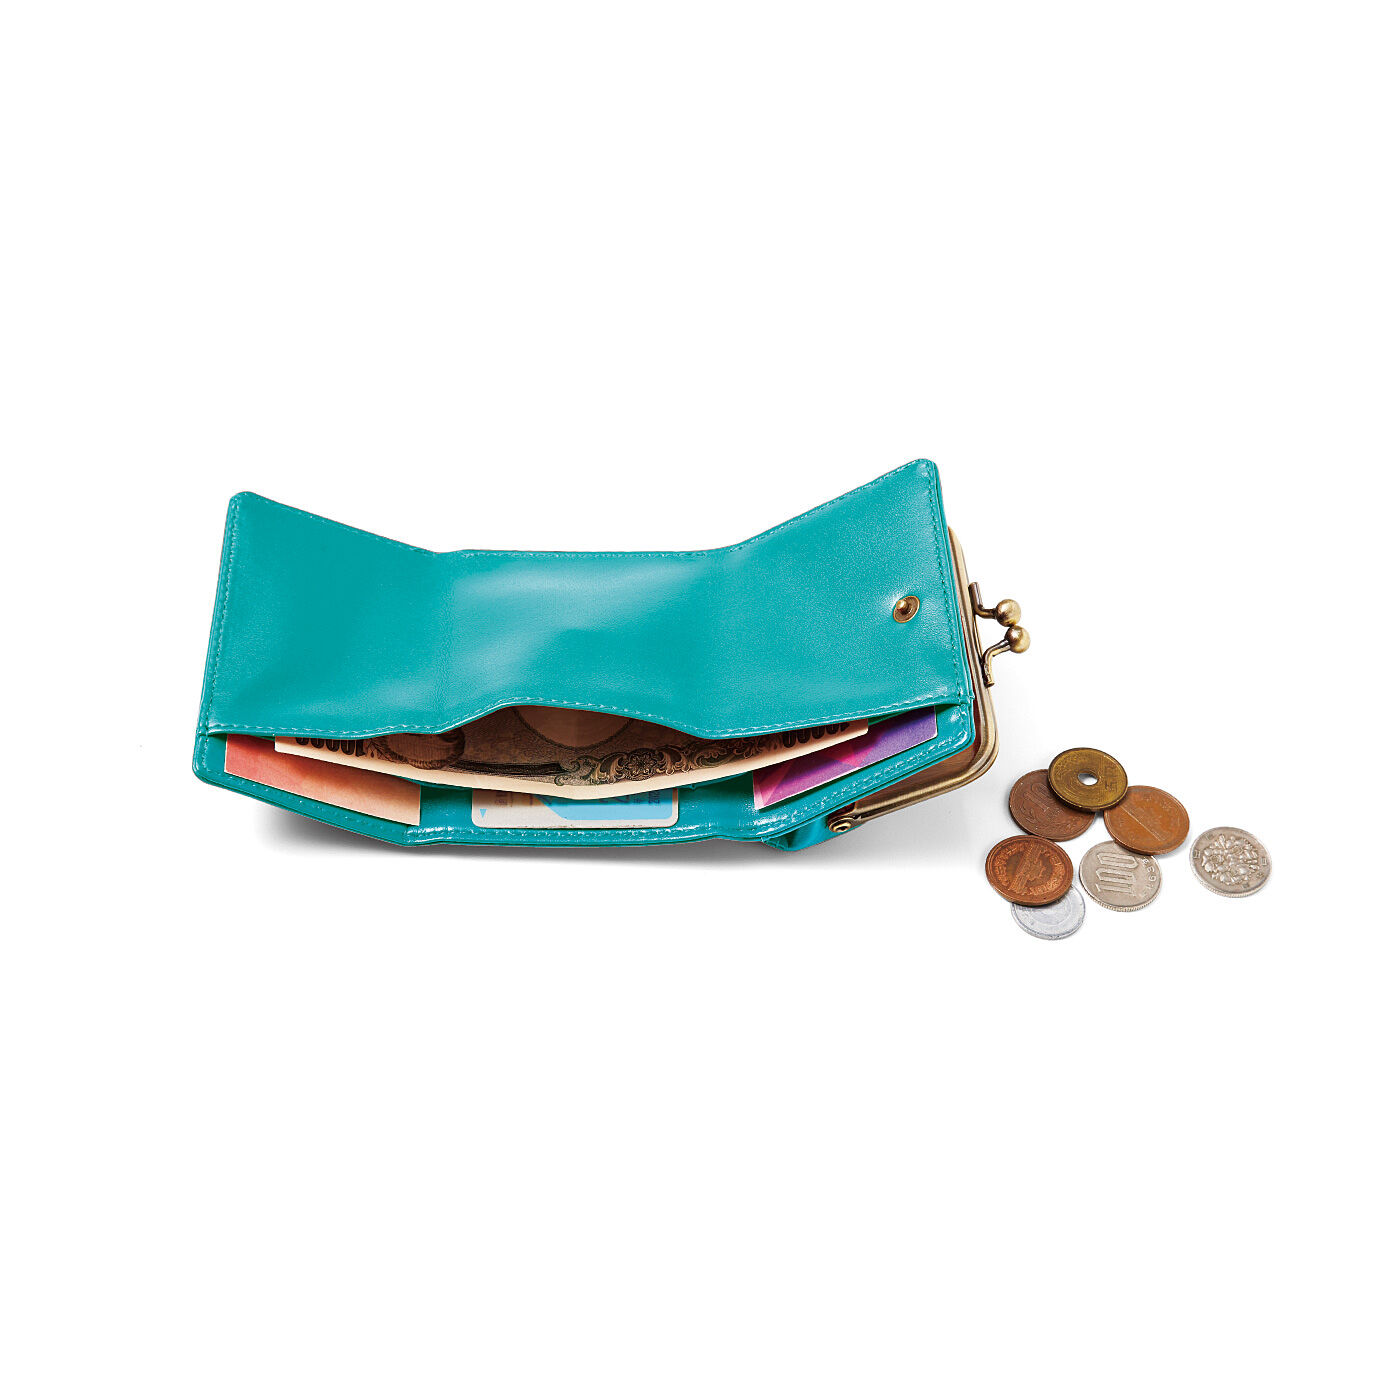 フェリシモの雑貨 Kraso|最小限をつれてって　海色ターコイズブルーのちっちゃめ手のり財布|最小限のカードと現金をコンパクトにひとまとめ。